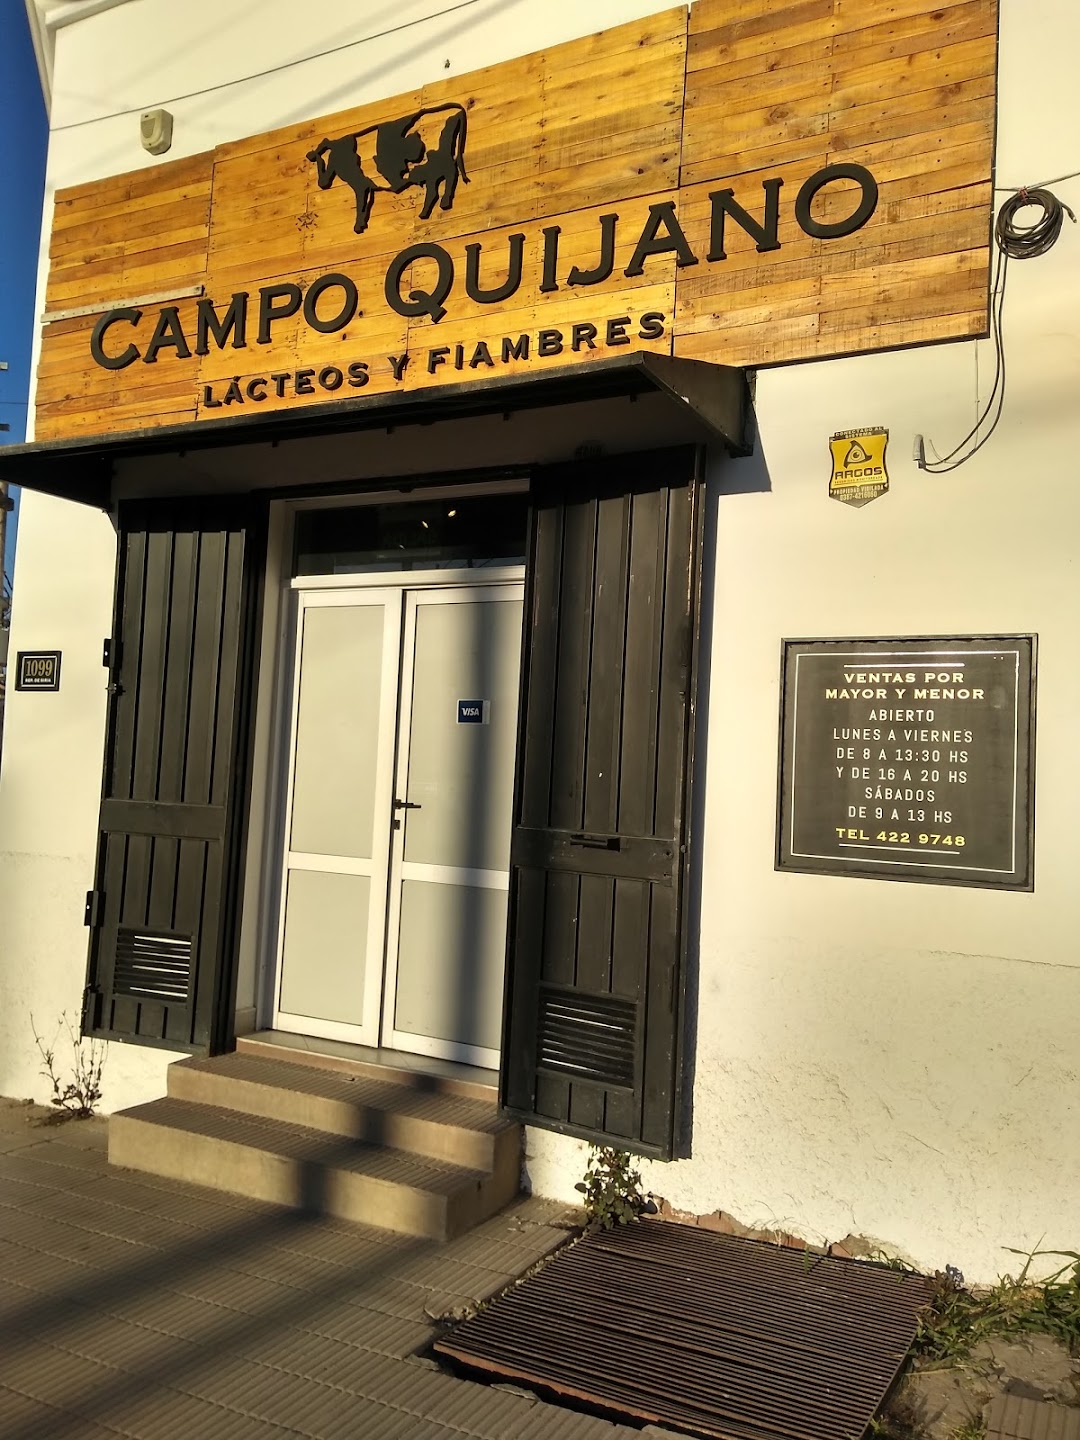 Campo Quijano Dulce.